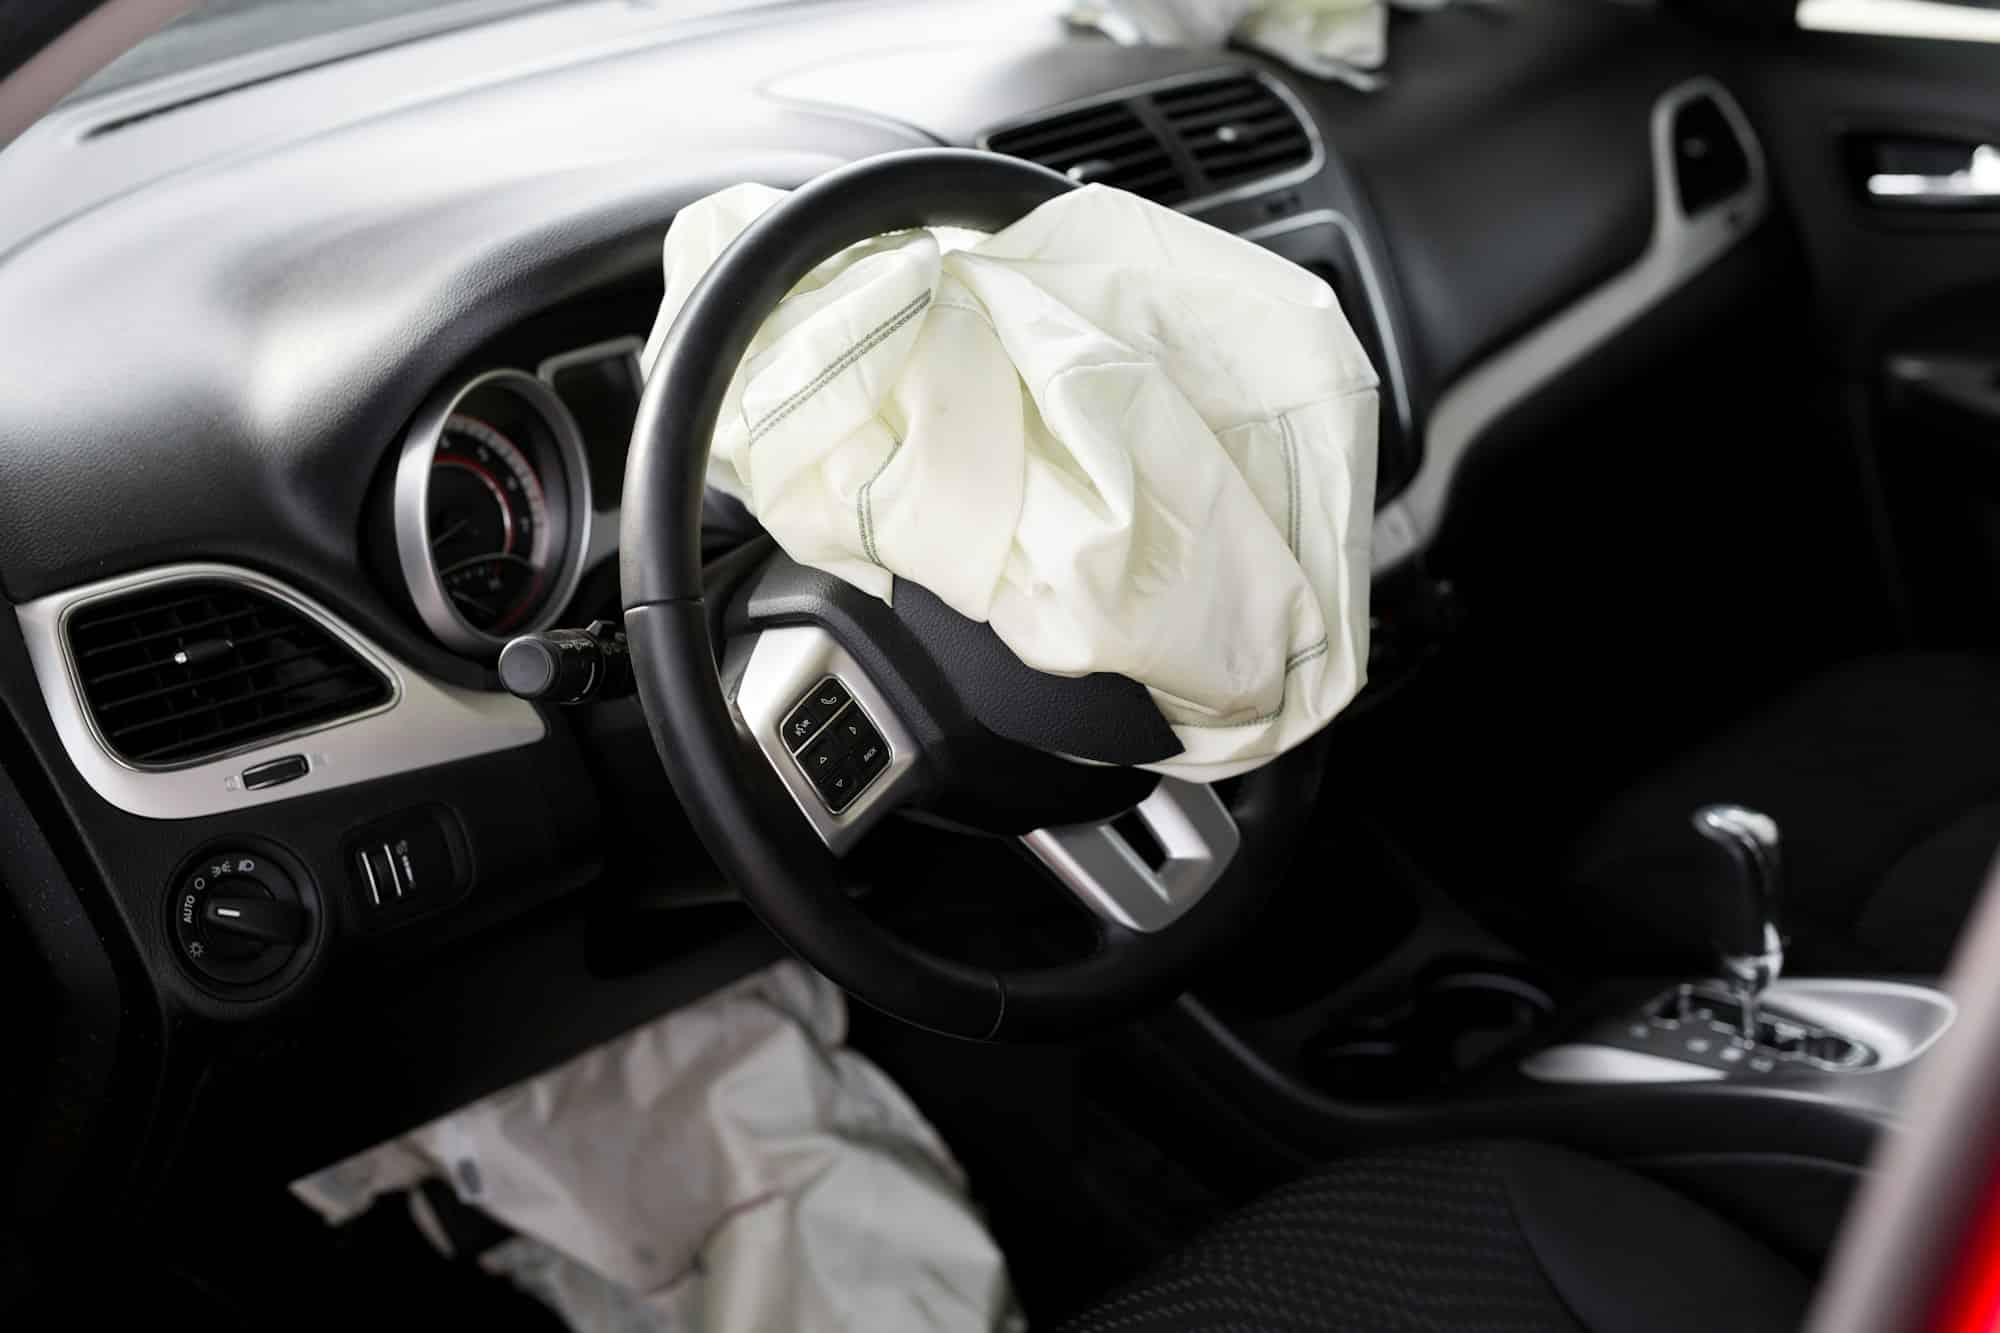 Les airbags pour genoux sont-ils efficaces pour réduire les blessures lors d’accidents frontaux?